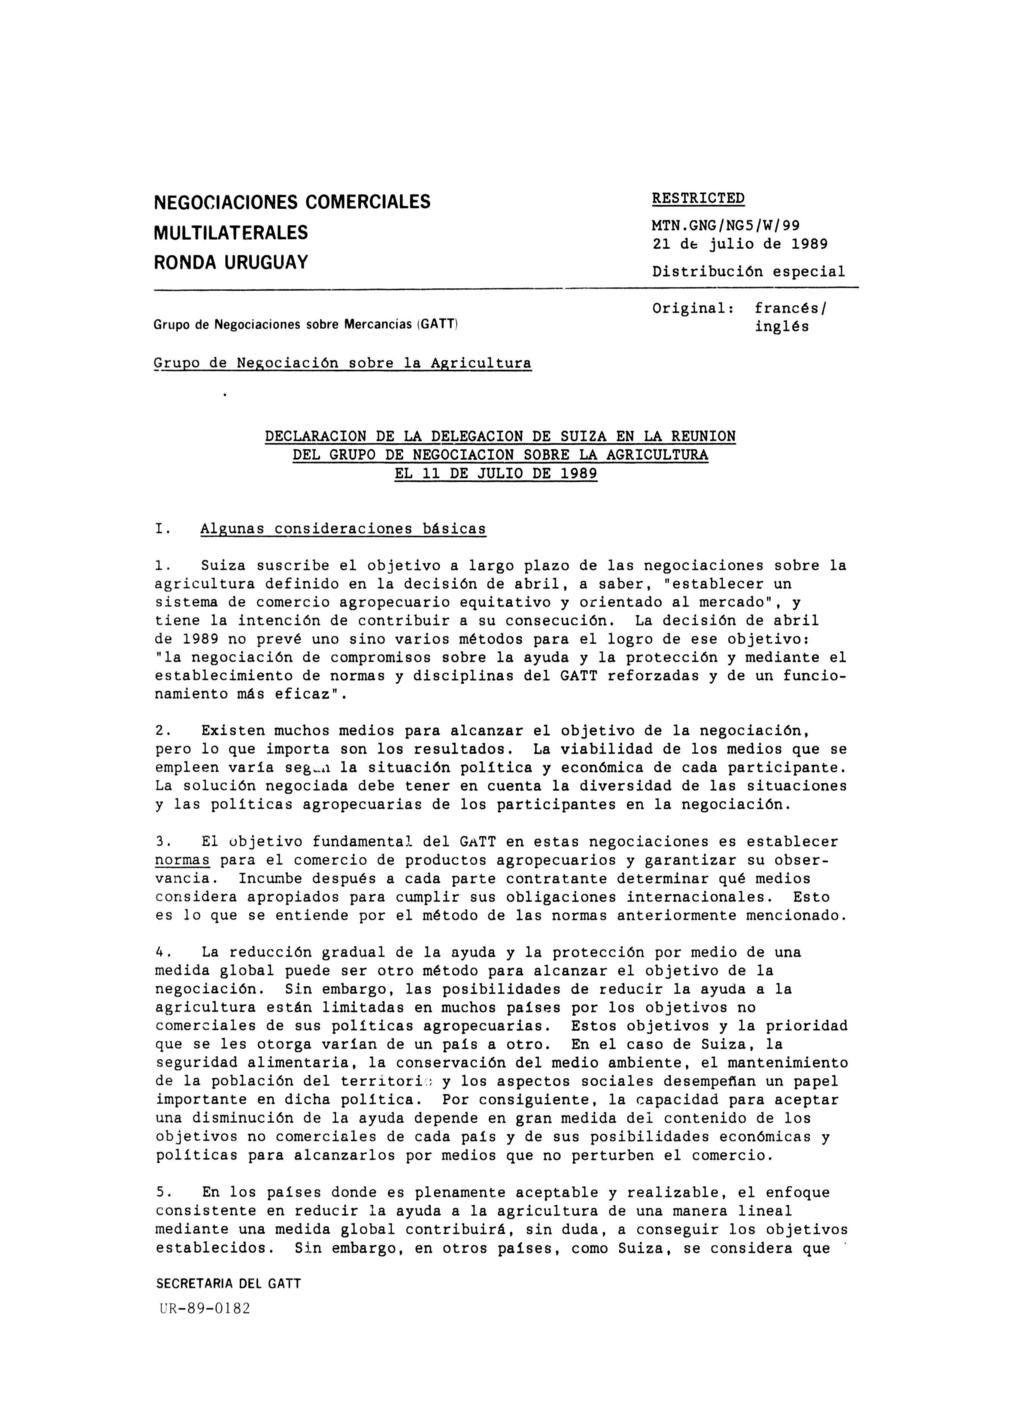 NEGOCIACIONES COMERCIALES MULTILATERALES RONDA URUGUAY Grupo de Negociaciones sobre Mercancías (GATT) Grupo de Negociación sobre la Agricultura RESTRICTED Tf^'^'V",*» 21 de julio de 1989 n.